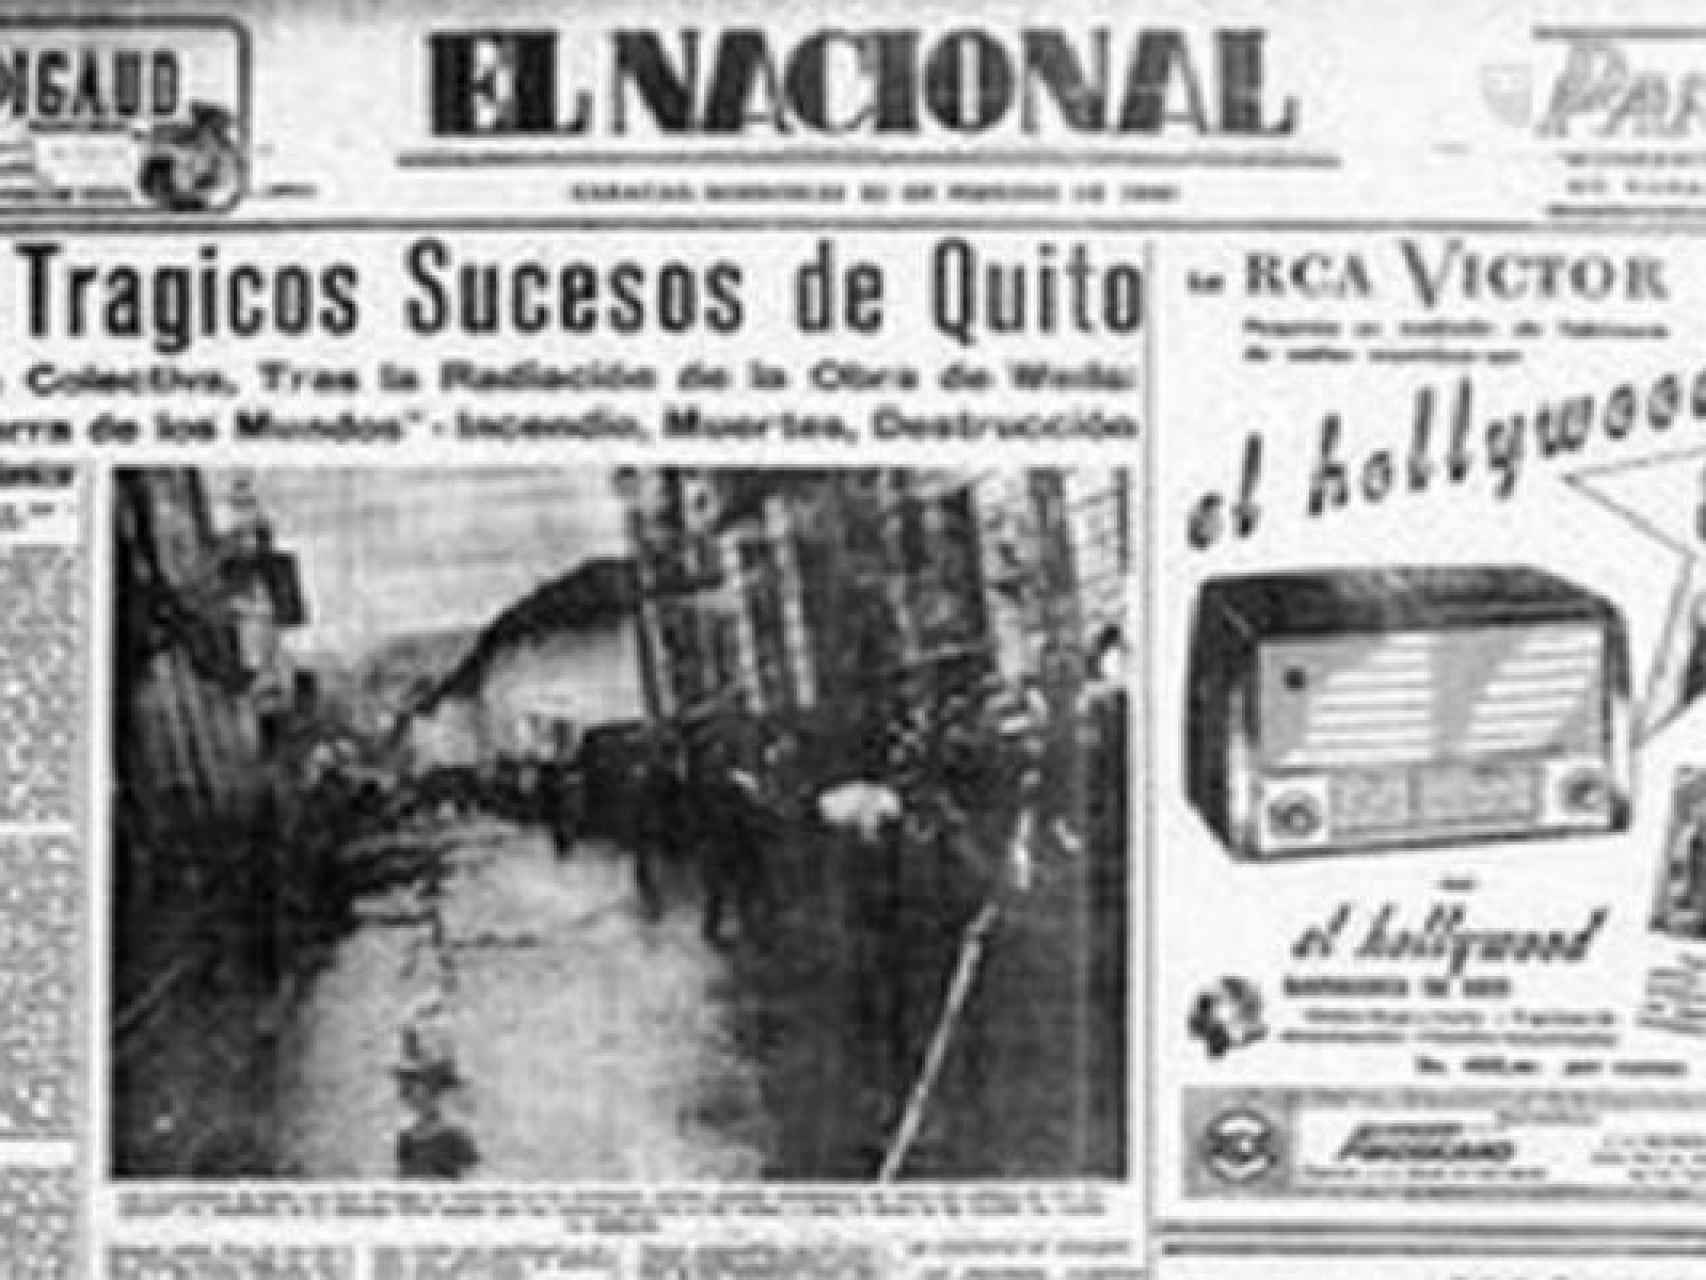 La portada de El Nacional con la noticia de la tragedia